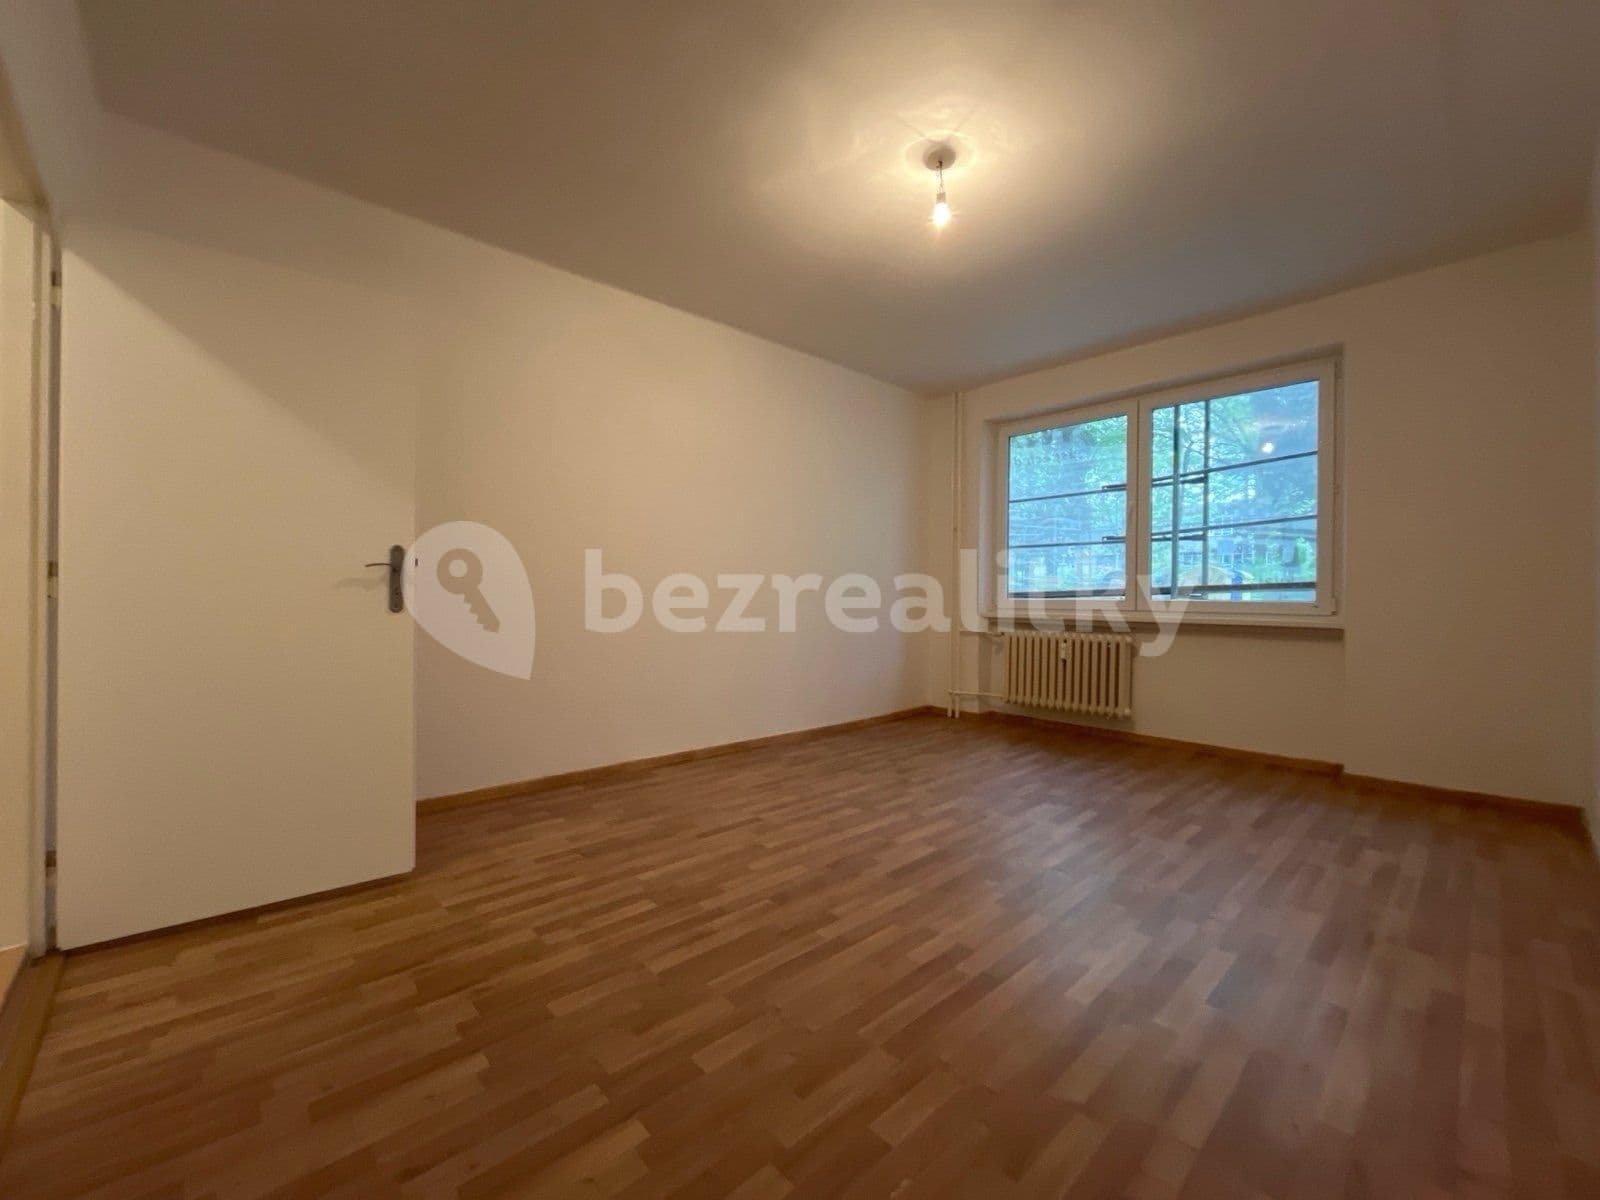 3 bedroom flat to rent, 68 m², 17. listopadu, Havířov, Moravskoslezský Region